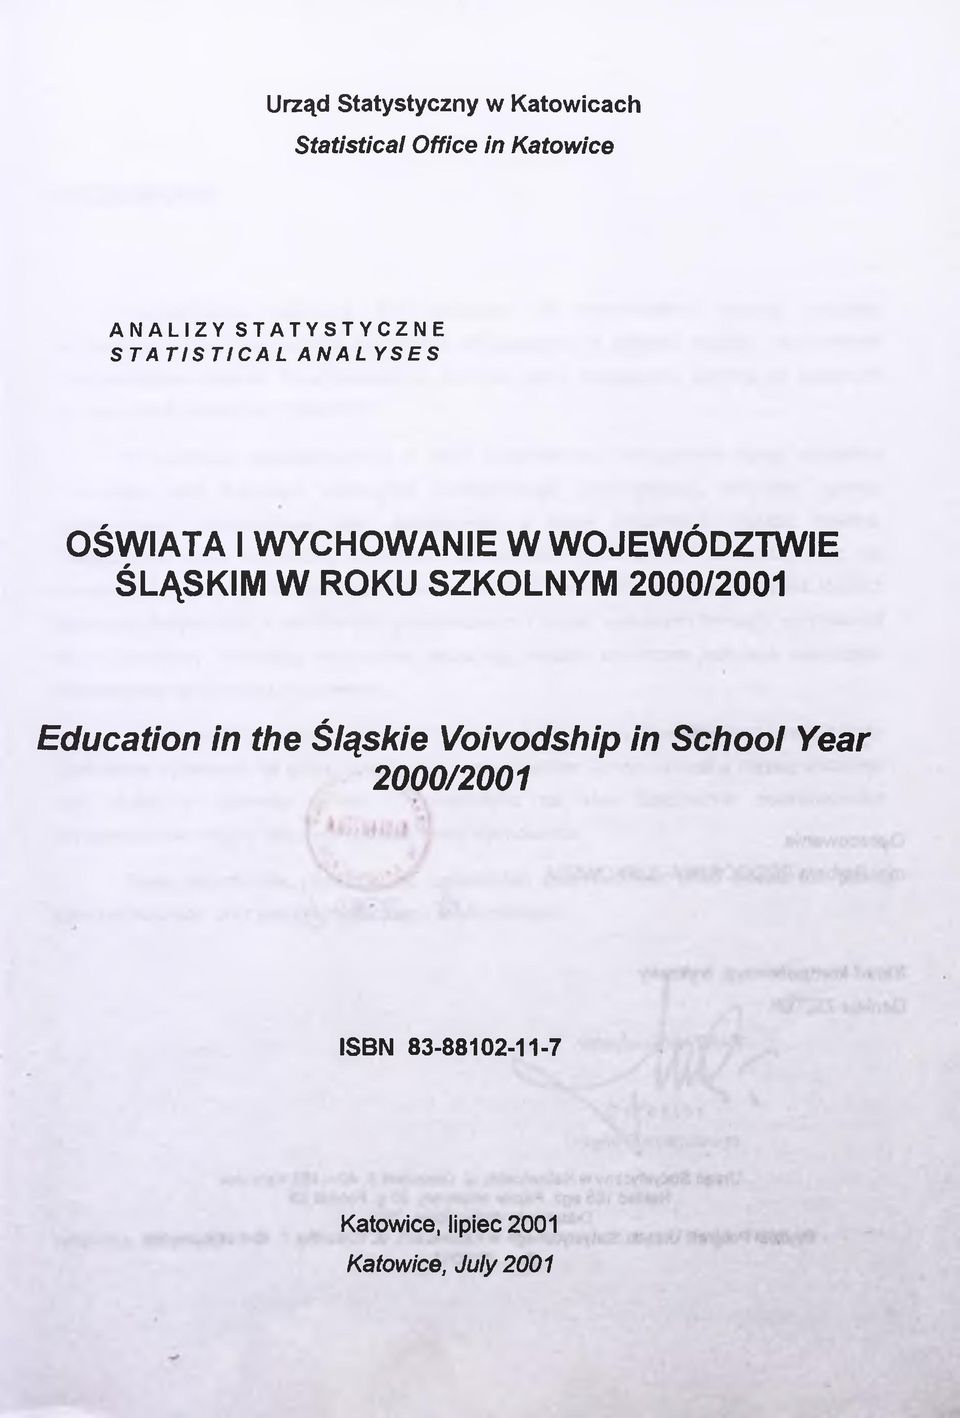 ŚLĄSKIM W ROKU SZKOLNYM 2000/2001 Education in the Śląskie Voivodship in